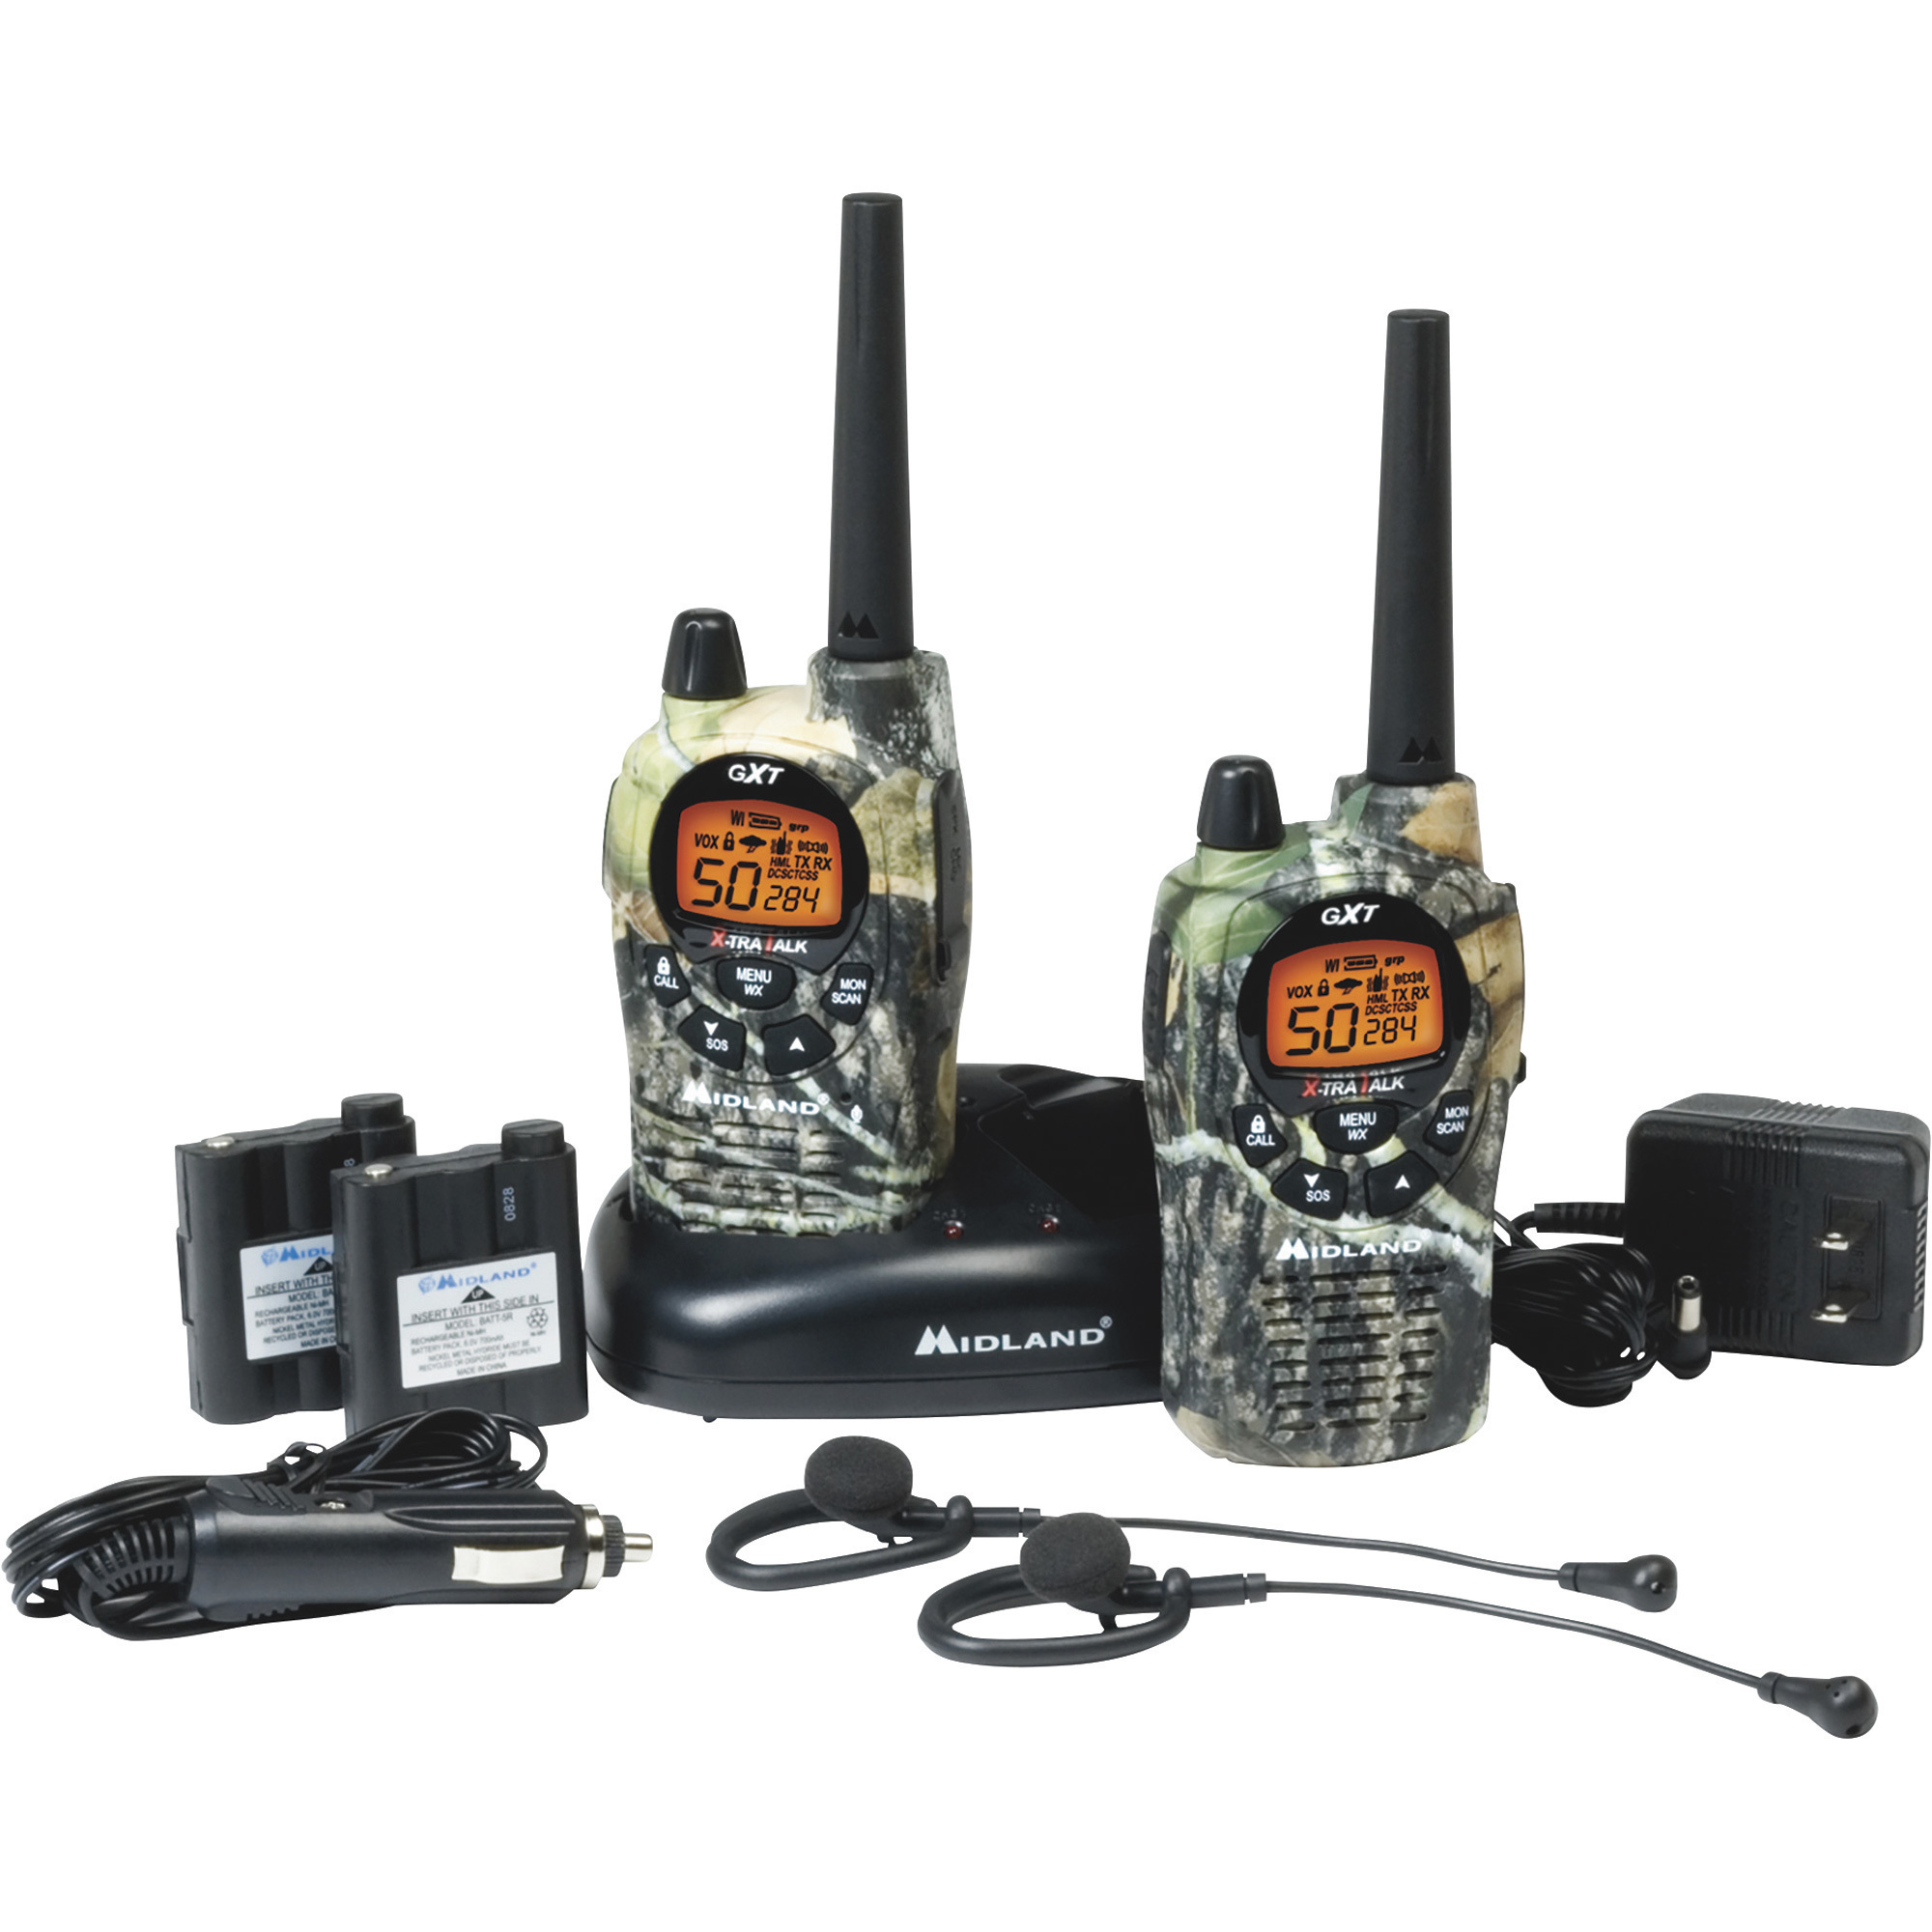 Midland Handheld GMRS Radio — Pair, 36-Mile Range, Model# GXT1050VP4  Northern Tool